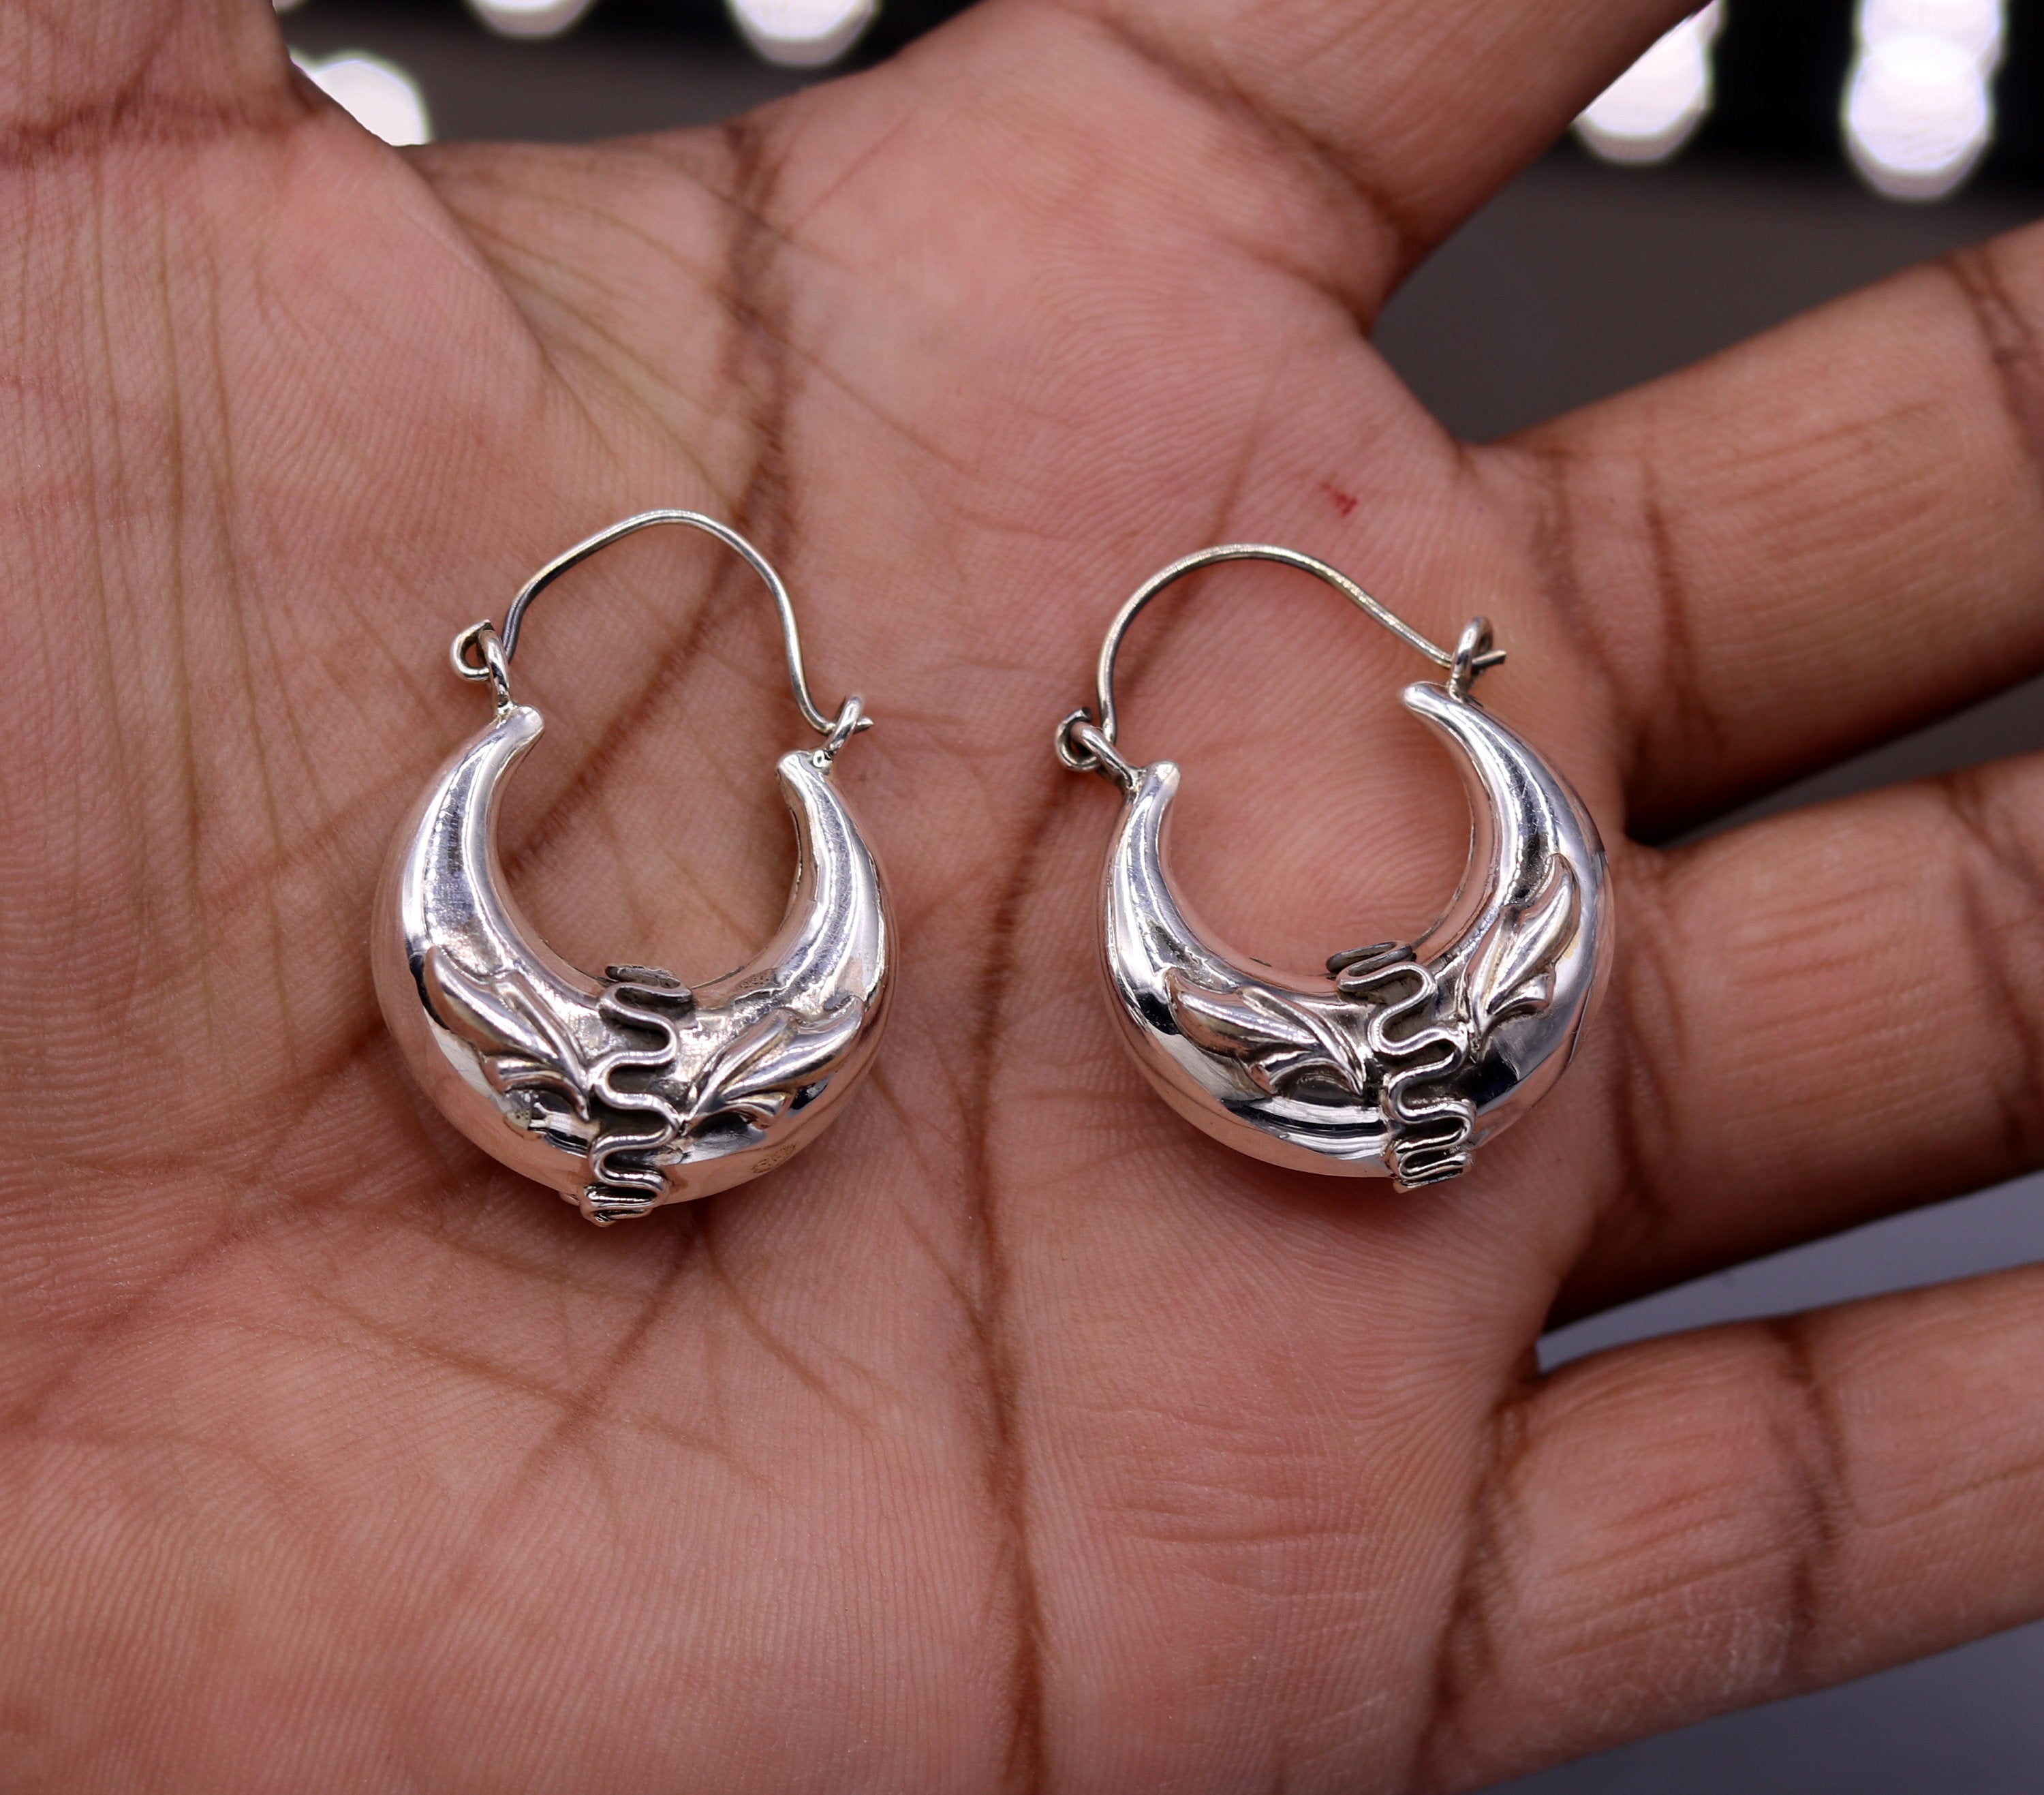 Bali Sterling Silver Diagonal Hoop Earrings, 18mm, with Hinged Closure,  Women's, Unisex - Walmart.com